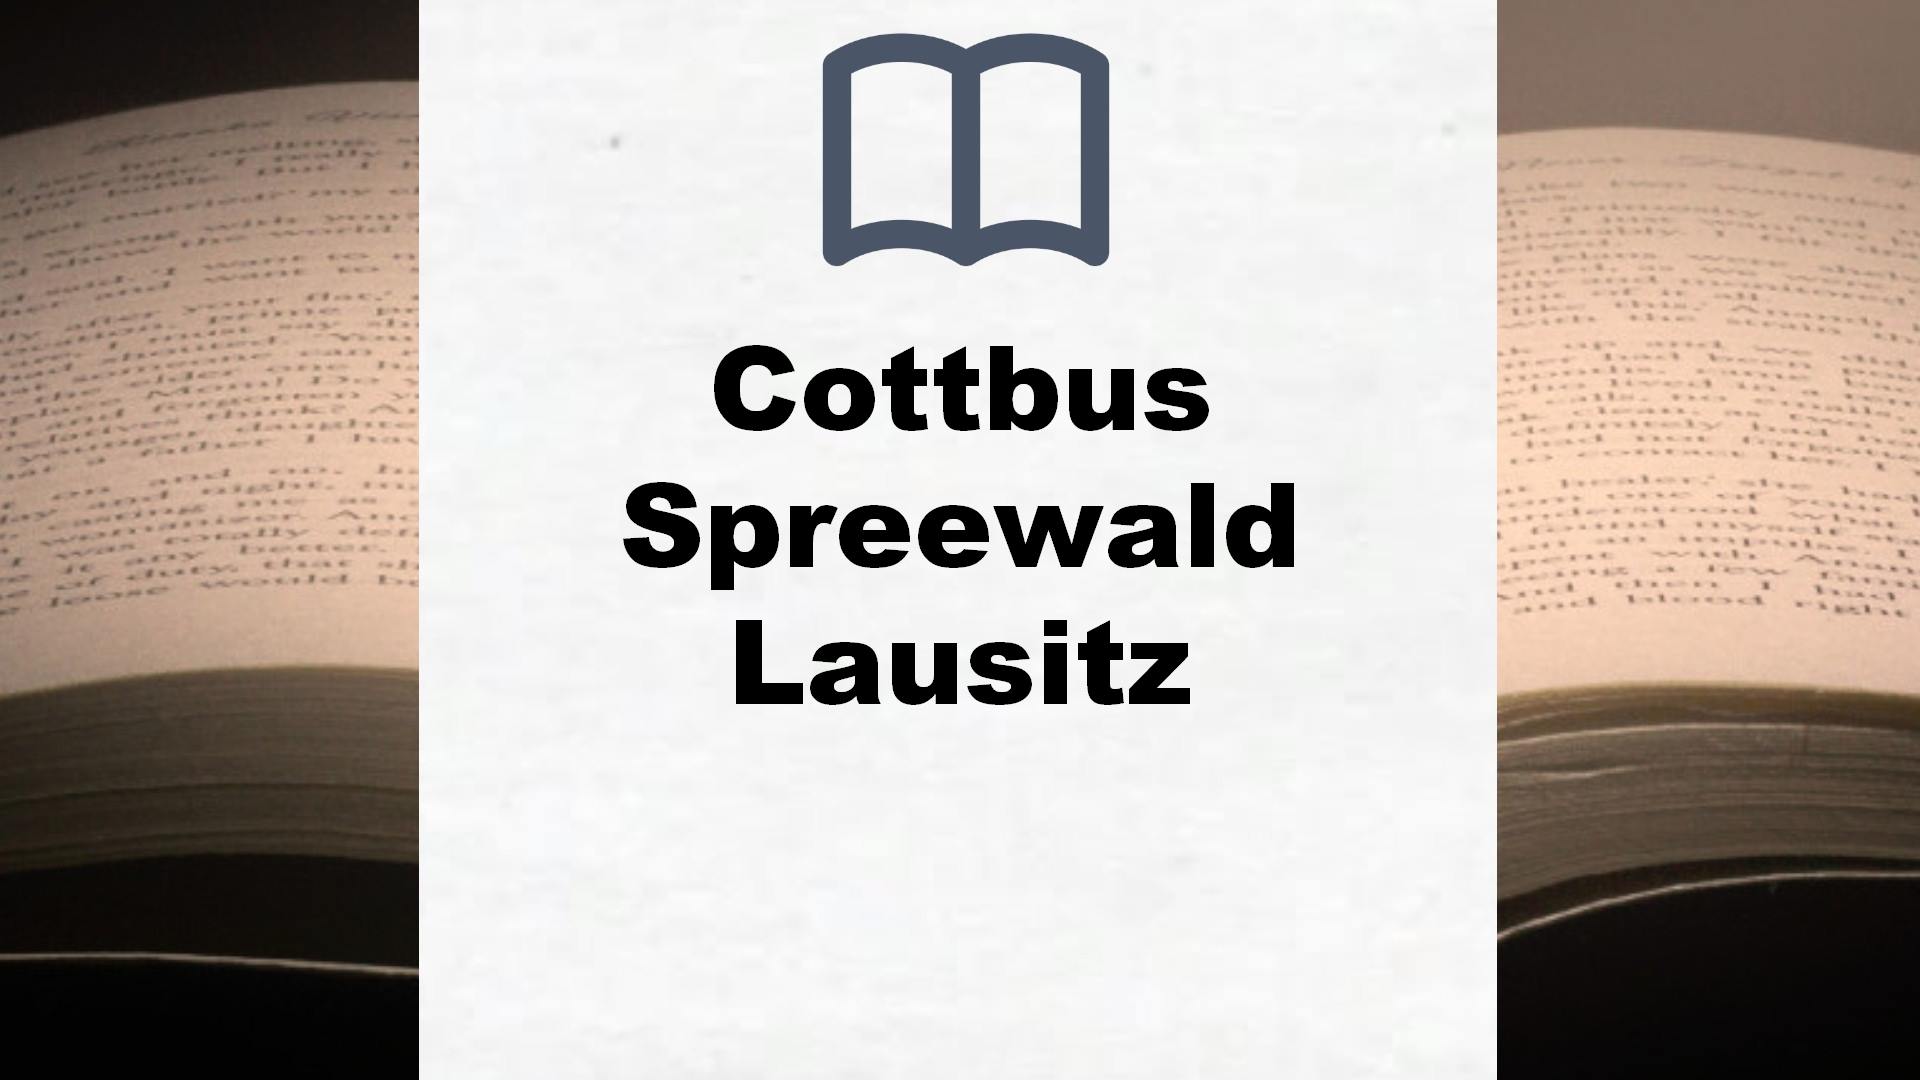 Bücher über Cottbus Spreewald Lausitz